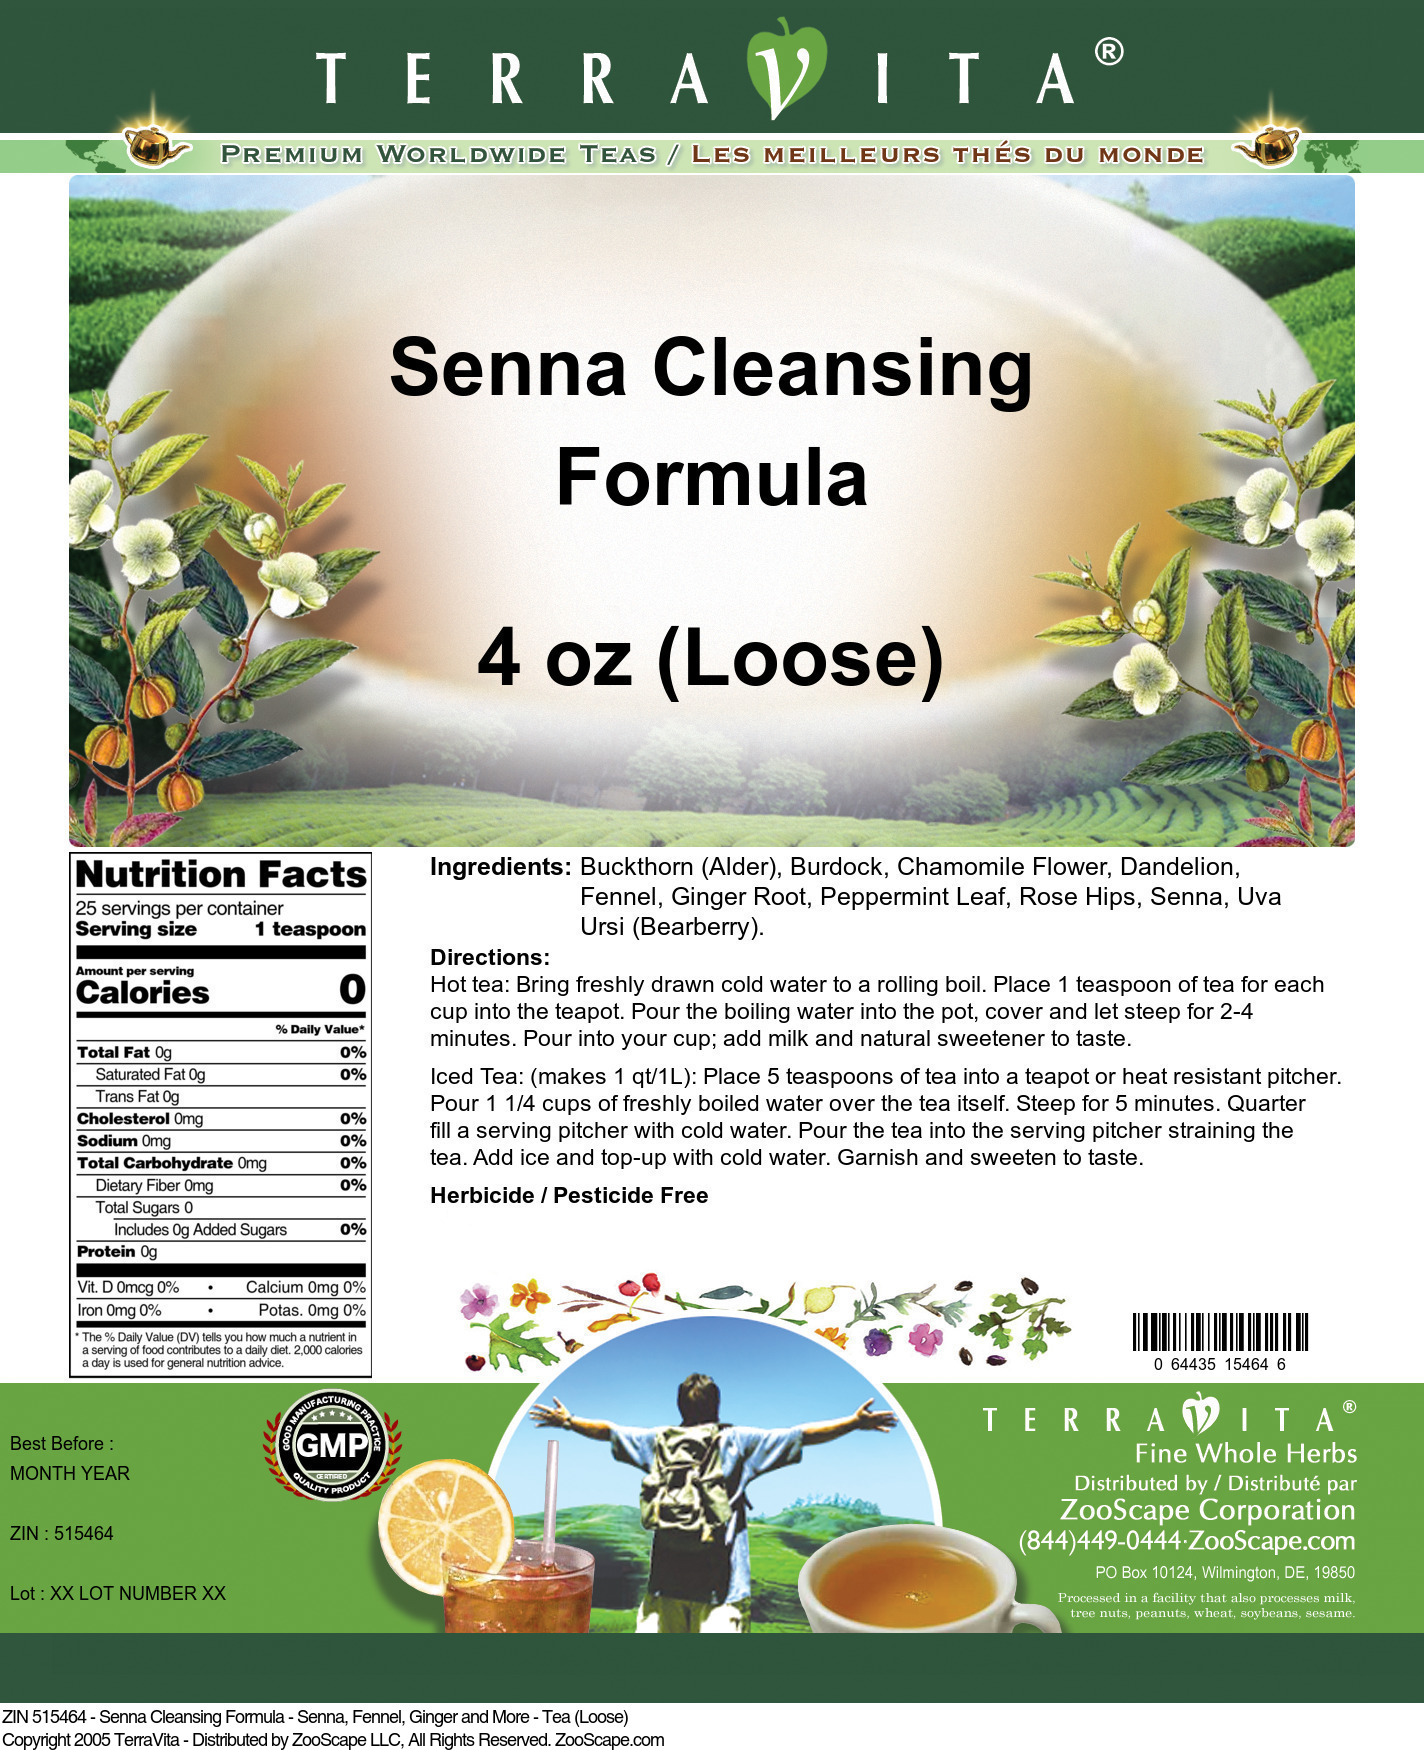 Senna Cleansing Formula - Senna, Fennel, Ginger and More - Tea (Loose) - Label